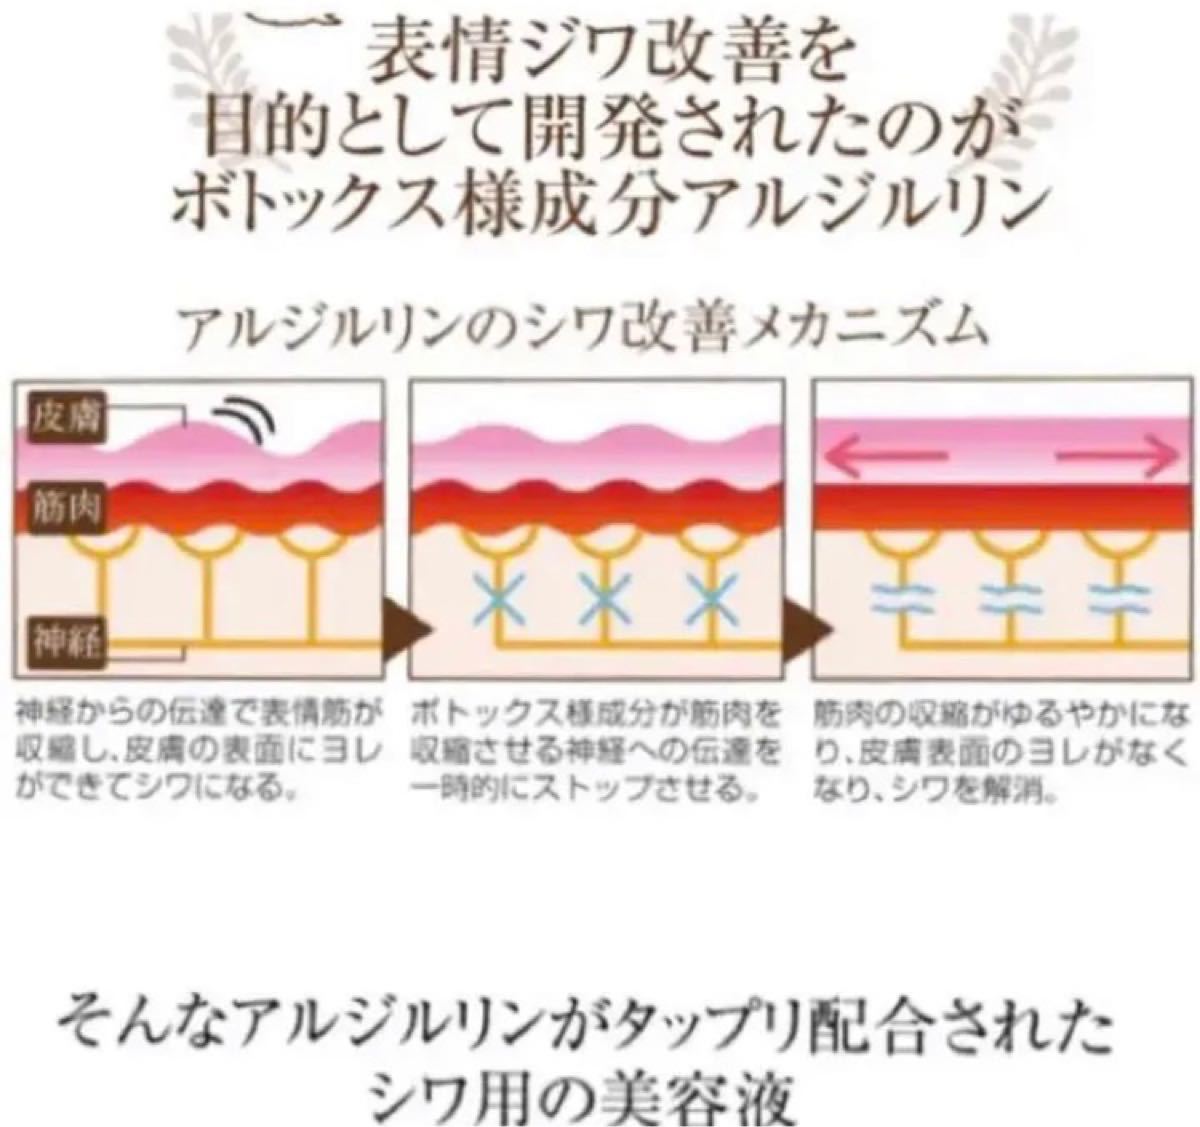 どんどん綺麗に☆柑橘系ビタミンC20%美容液&コラーゲン ☆美白 シミ